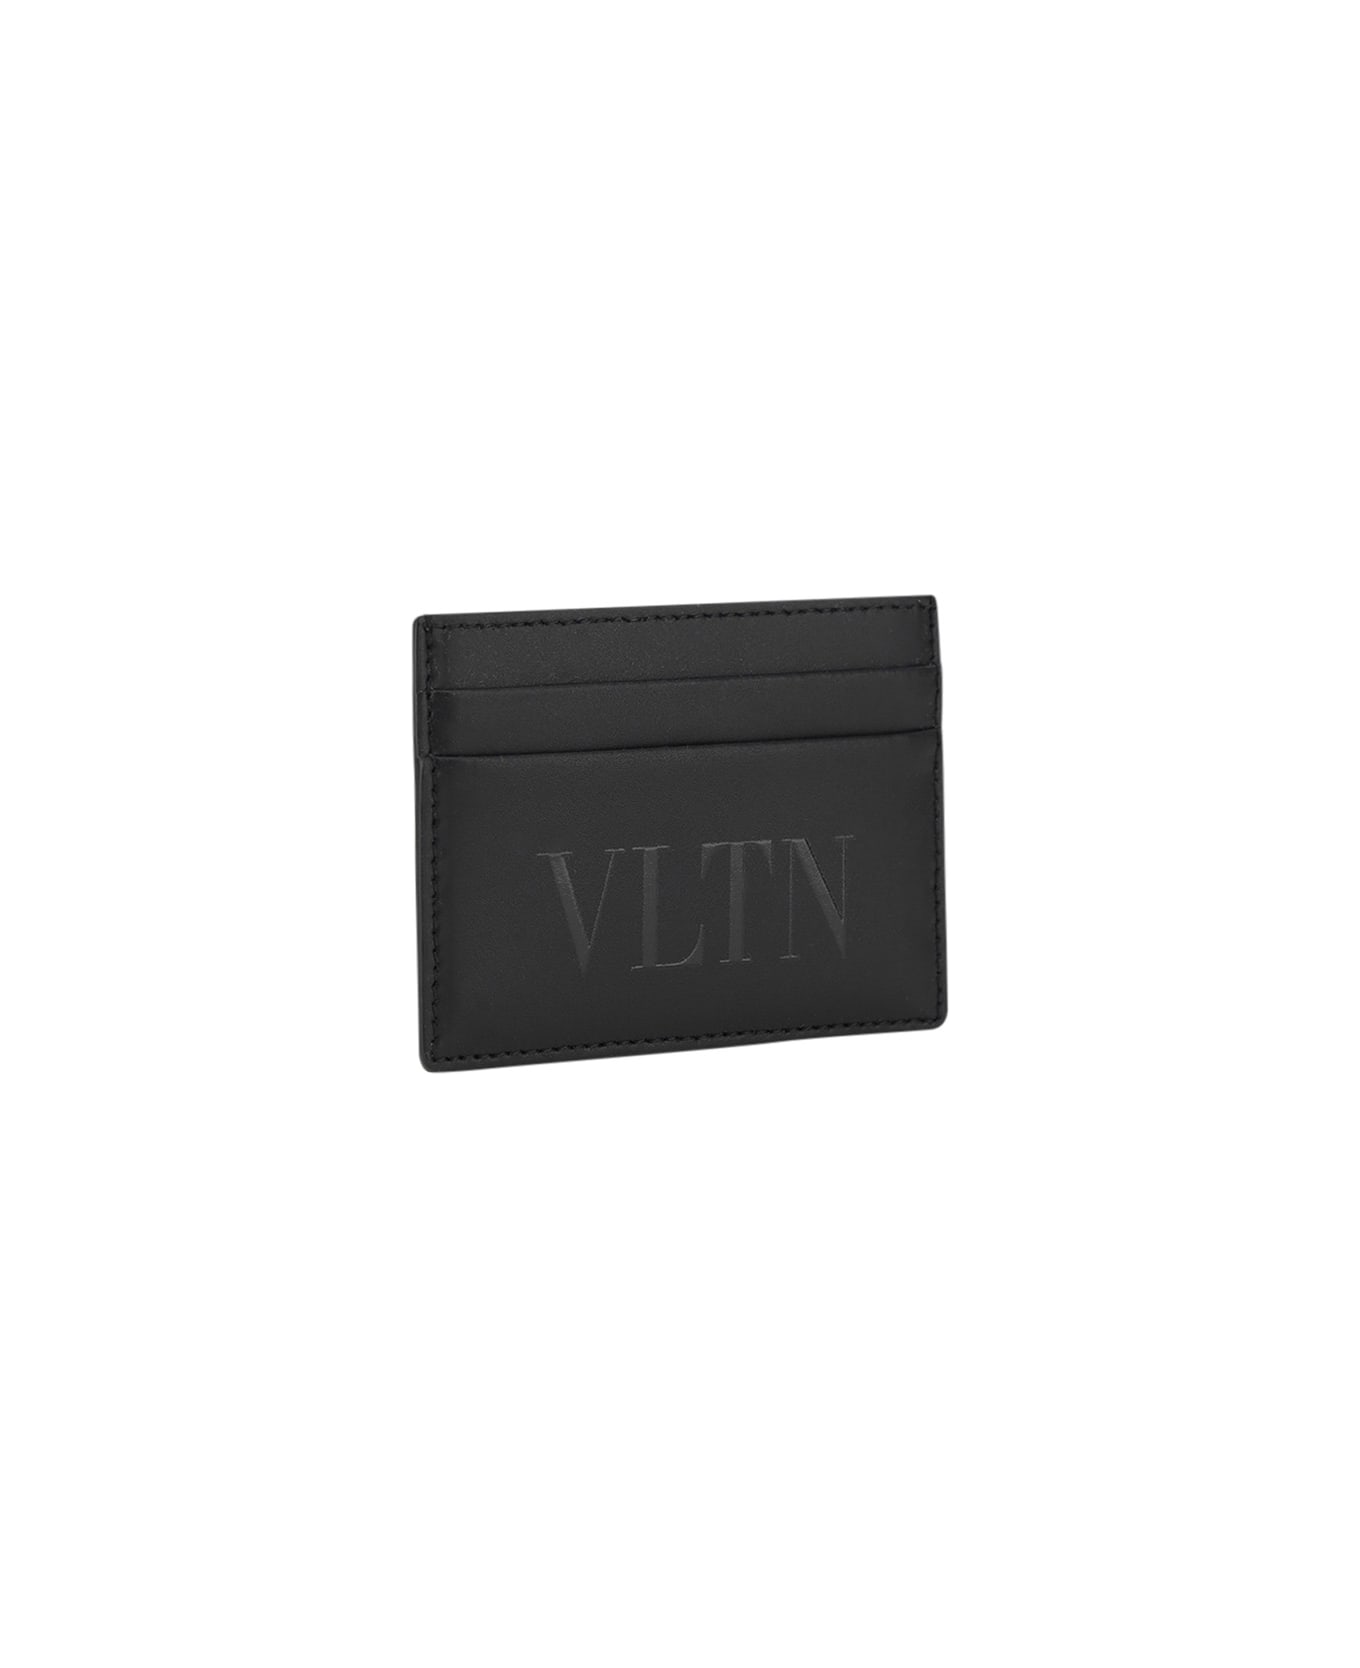 Valentino Garavani Vltn Card Case - Black